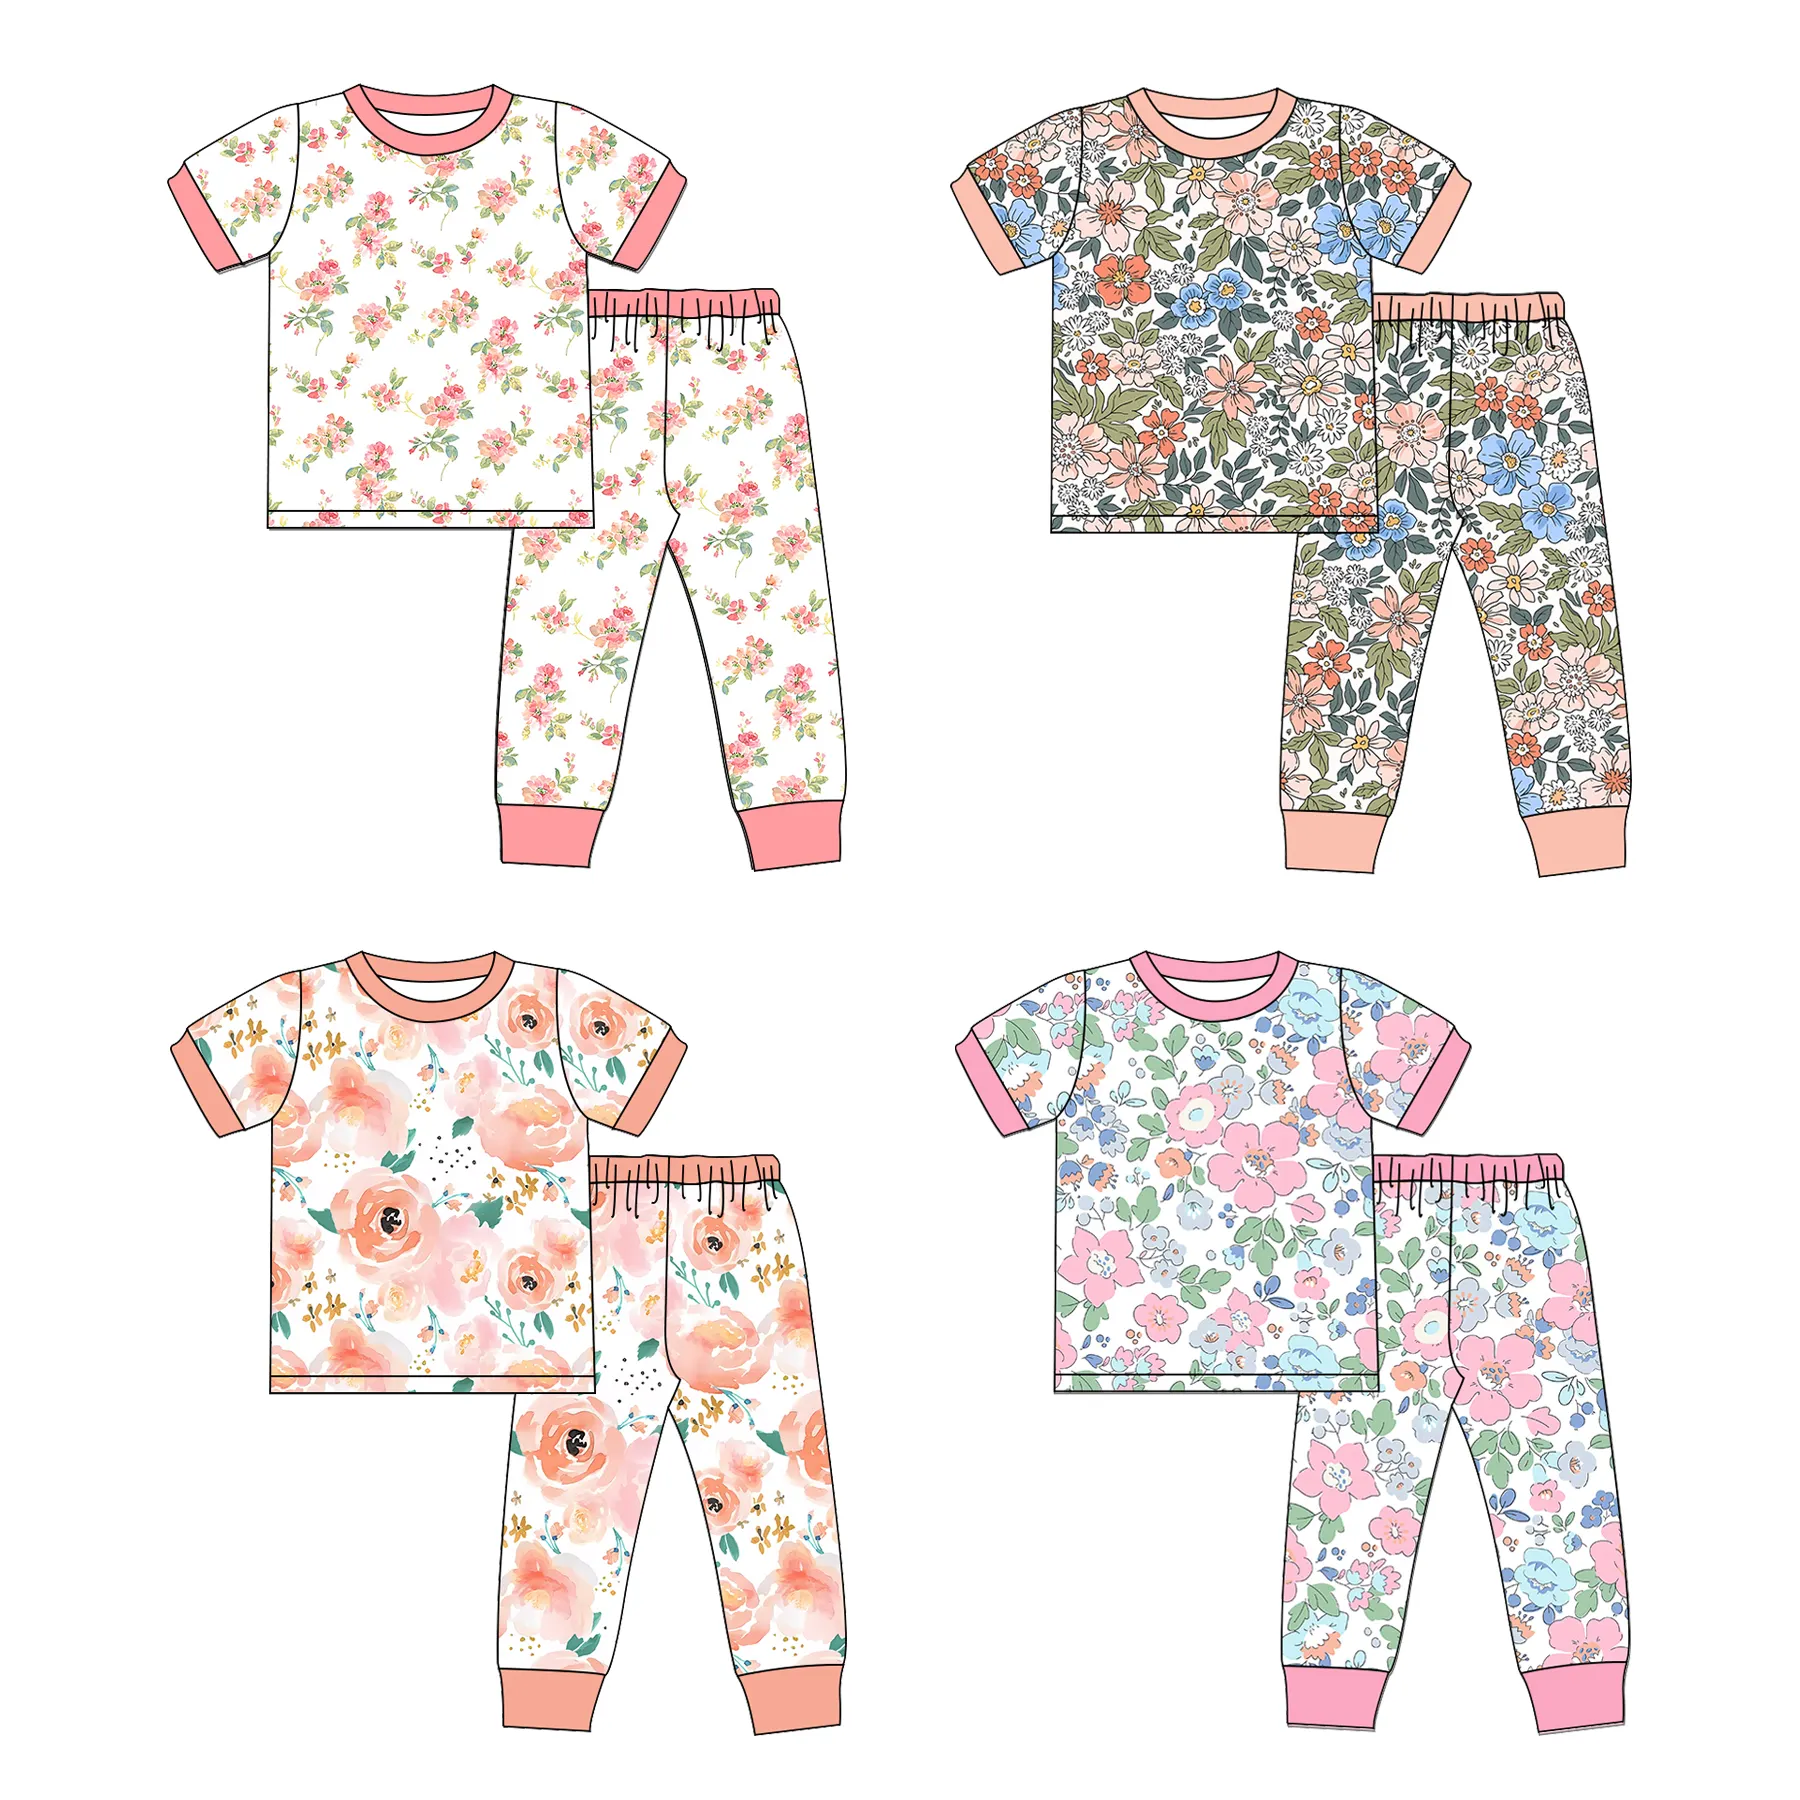 OEM Wholesale 2 Piece Baby Pyjamas Bodysuit Long Sleeve Soft Sleepwear Cotton Boys Girls Pajamas Elastic Pyjamas Kids